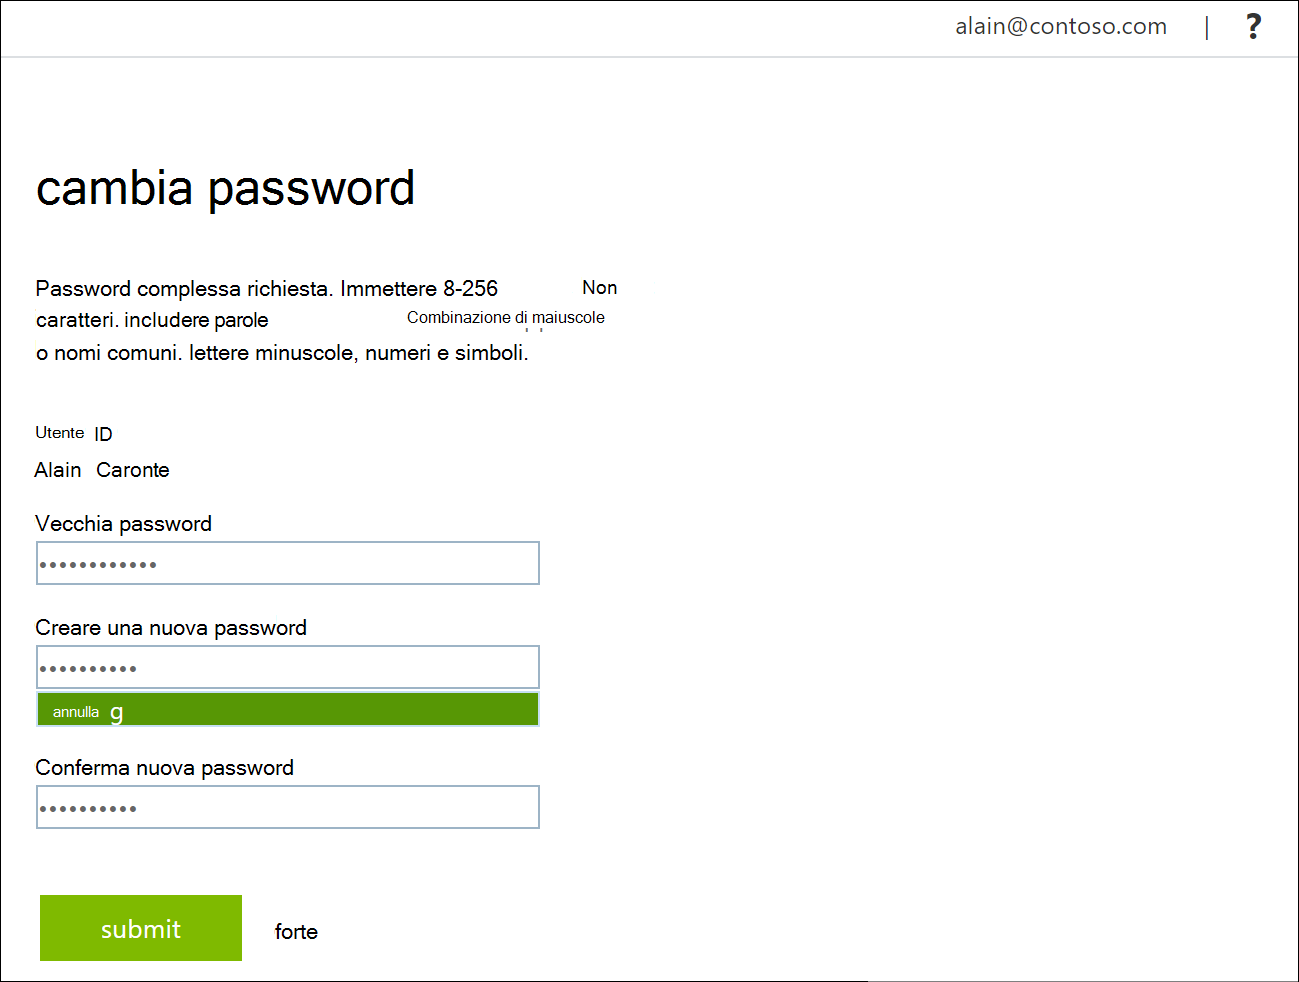 Pagina Cambia password con i campi della password